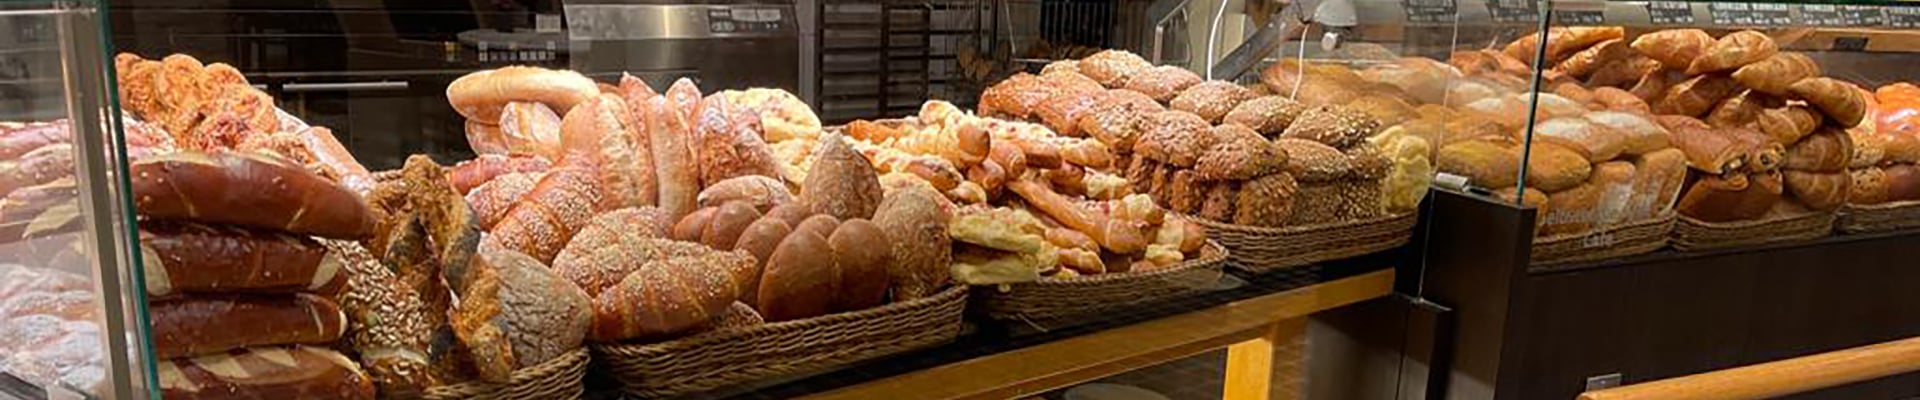 Die Filiale der Bäckerei Voosen in Köln Weiden